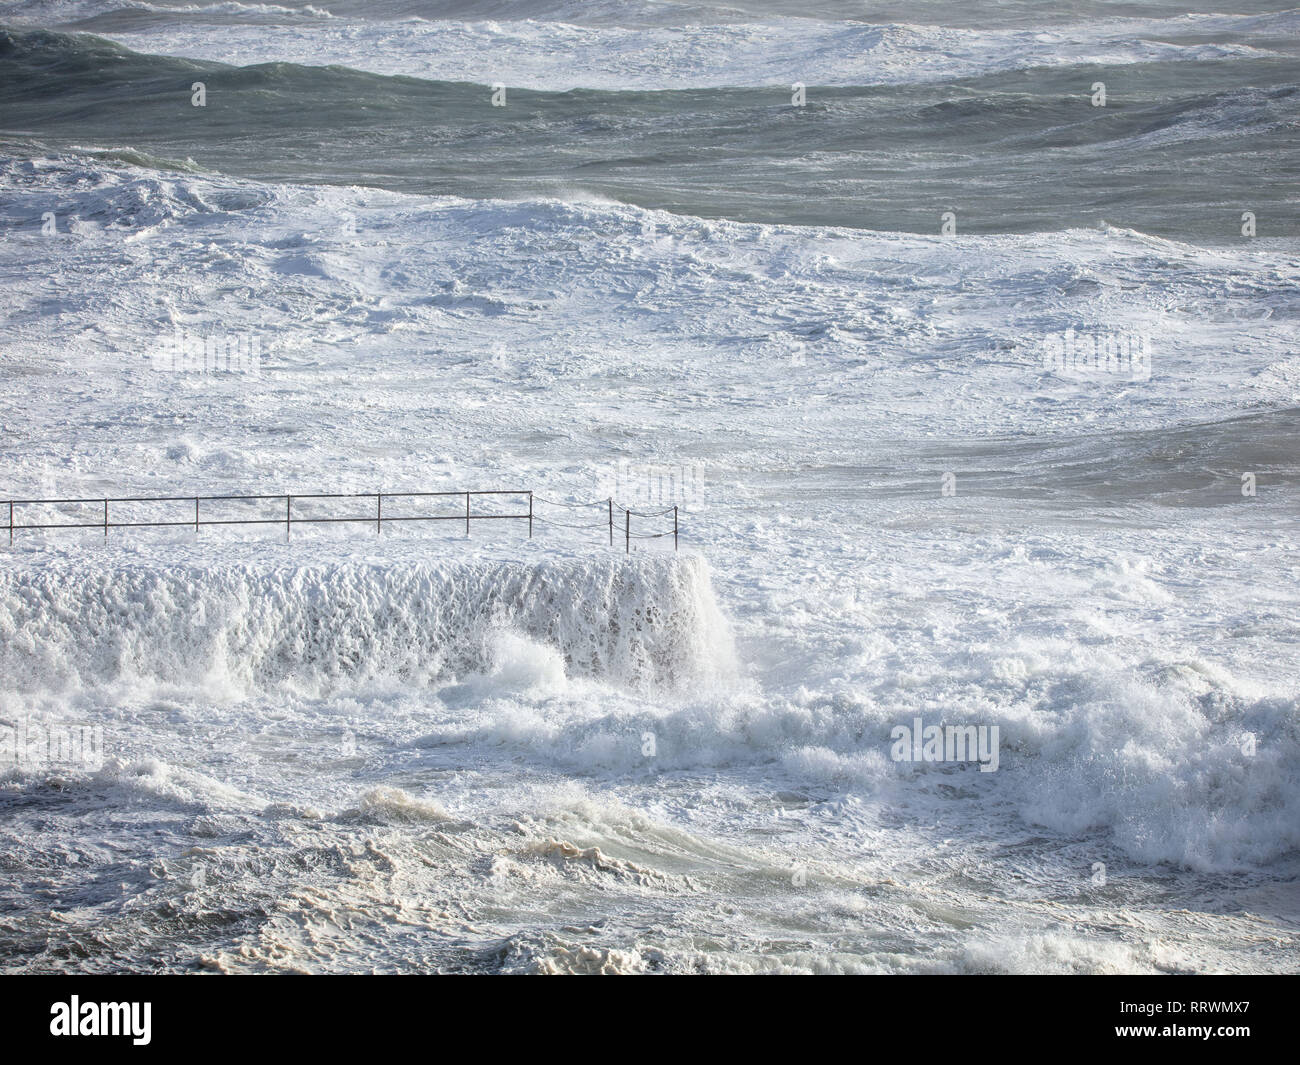 Il frangiflutti Porthleven sempre colpito da una forte marea. Foto Stock